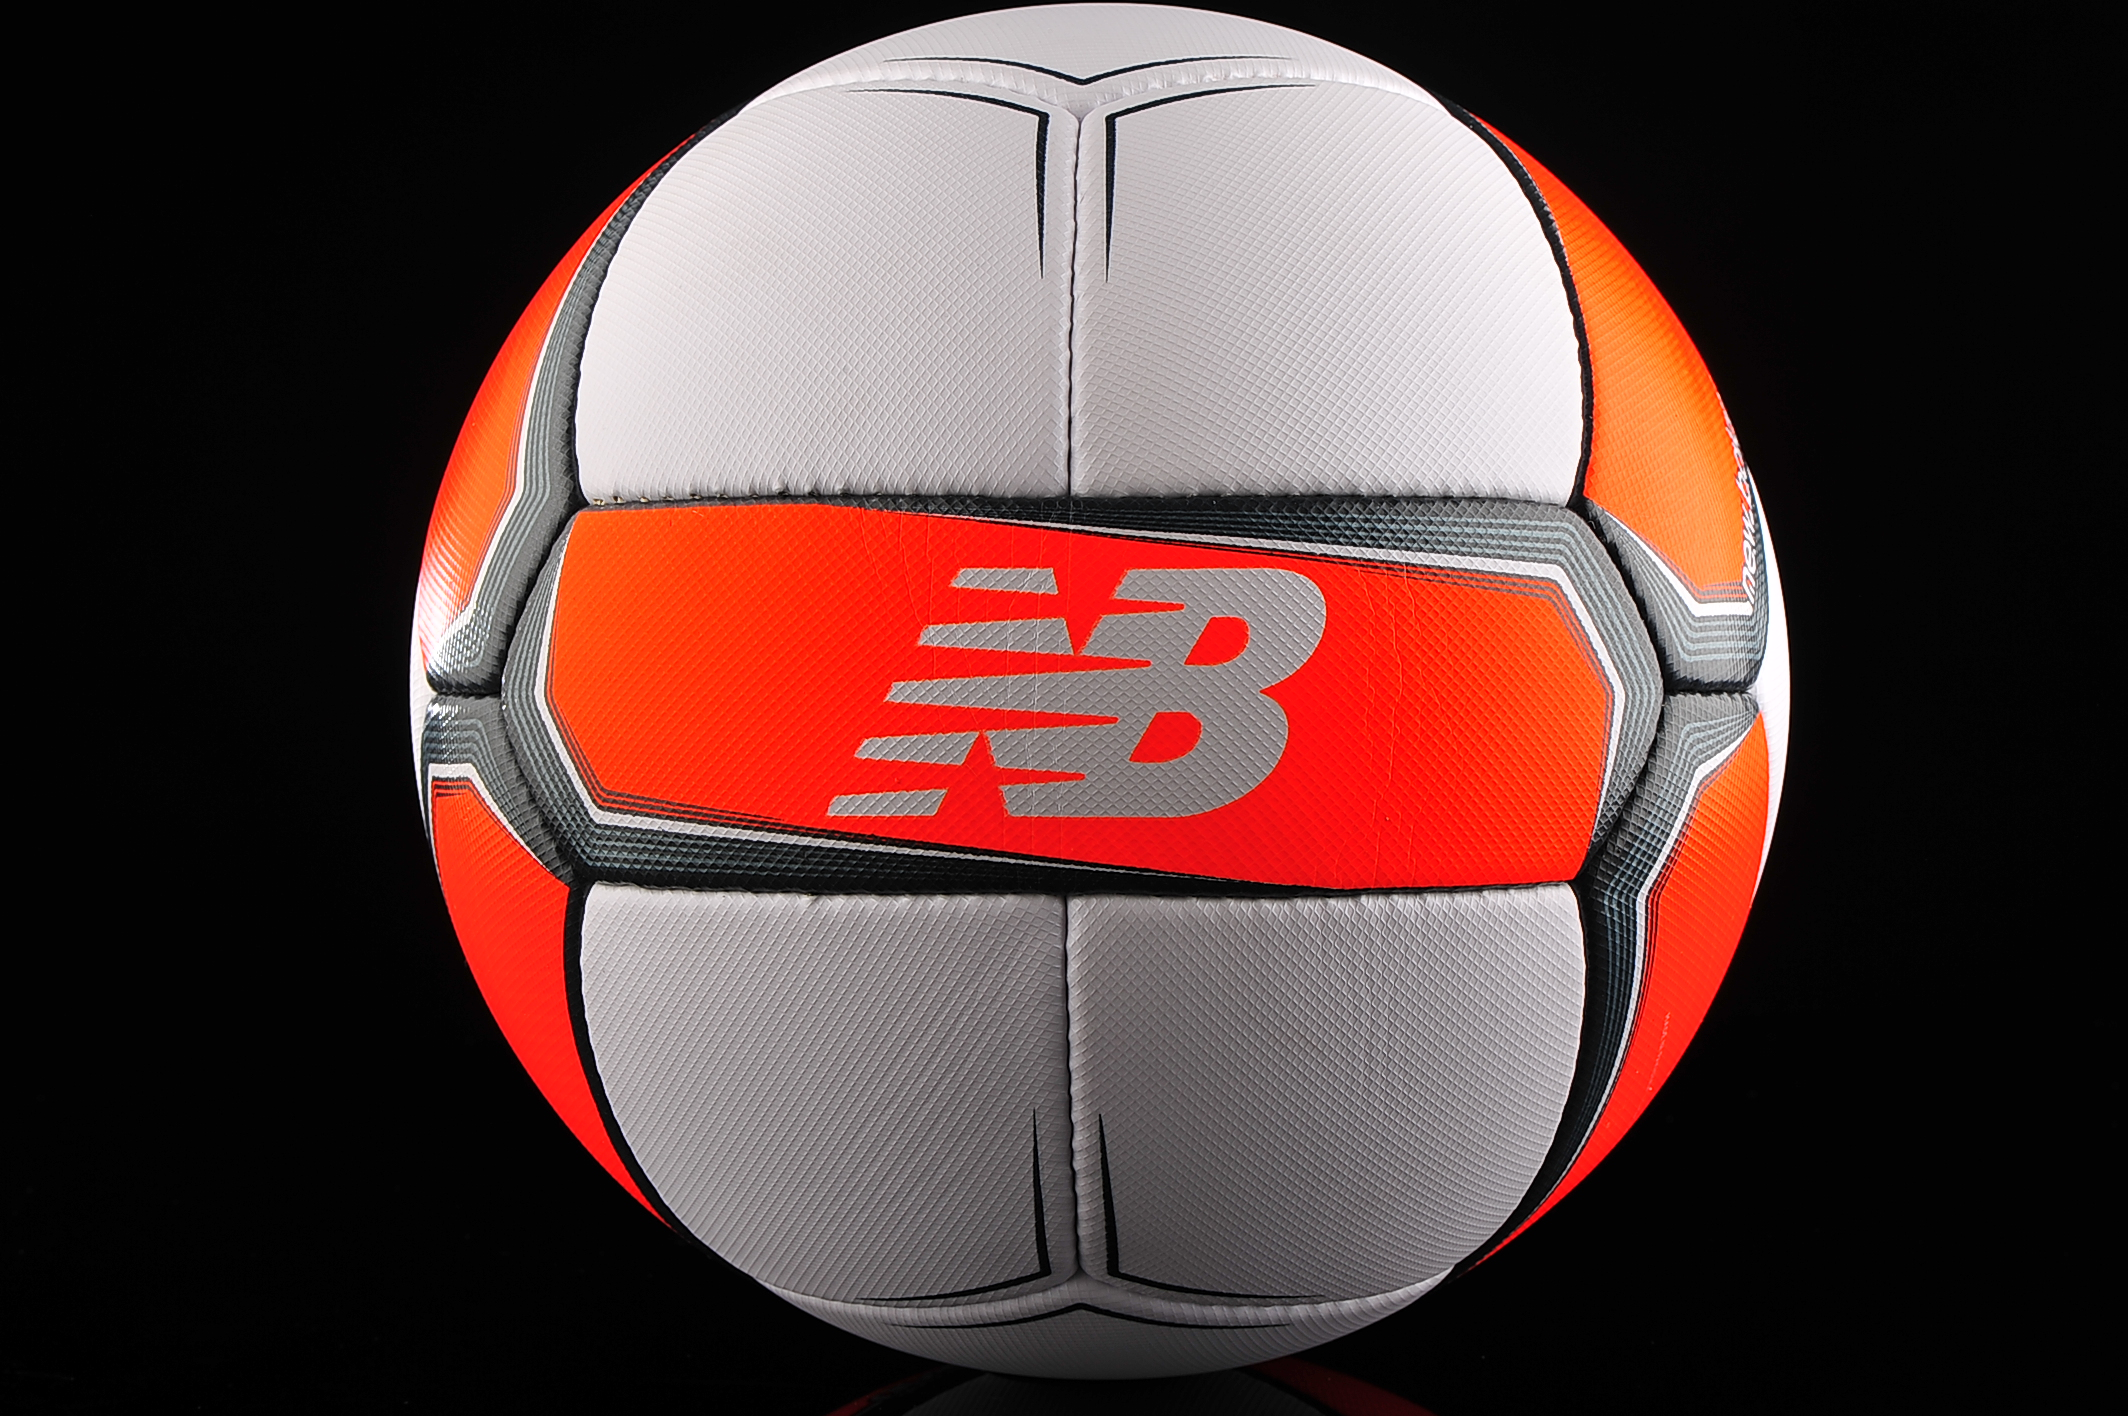 Ball New Balance Furon Destroy FIFA NFLDEST6 size | R-GOL.com Football boots equipment